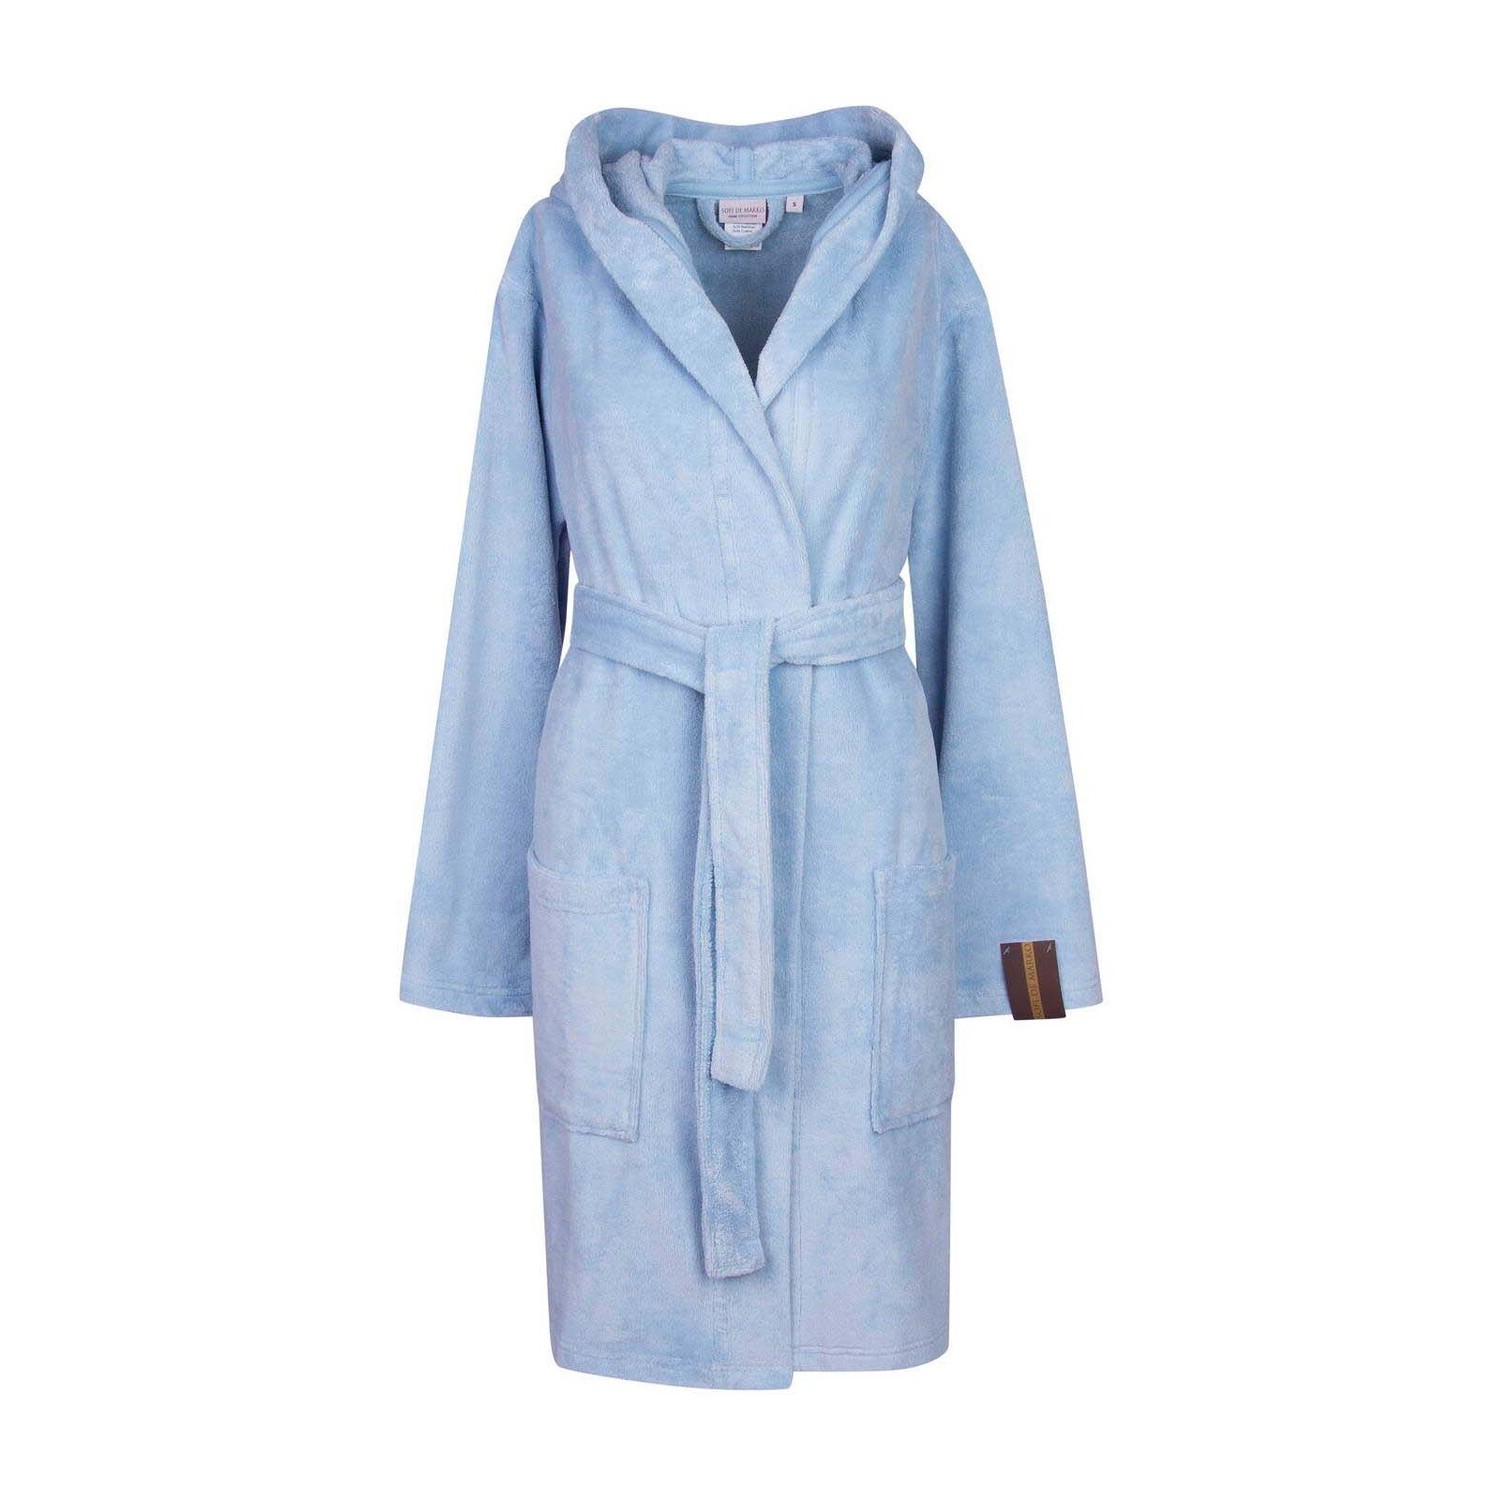 Банный халат Шанти цвет: голубой (S)